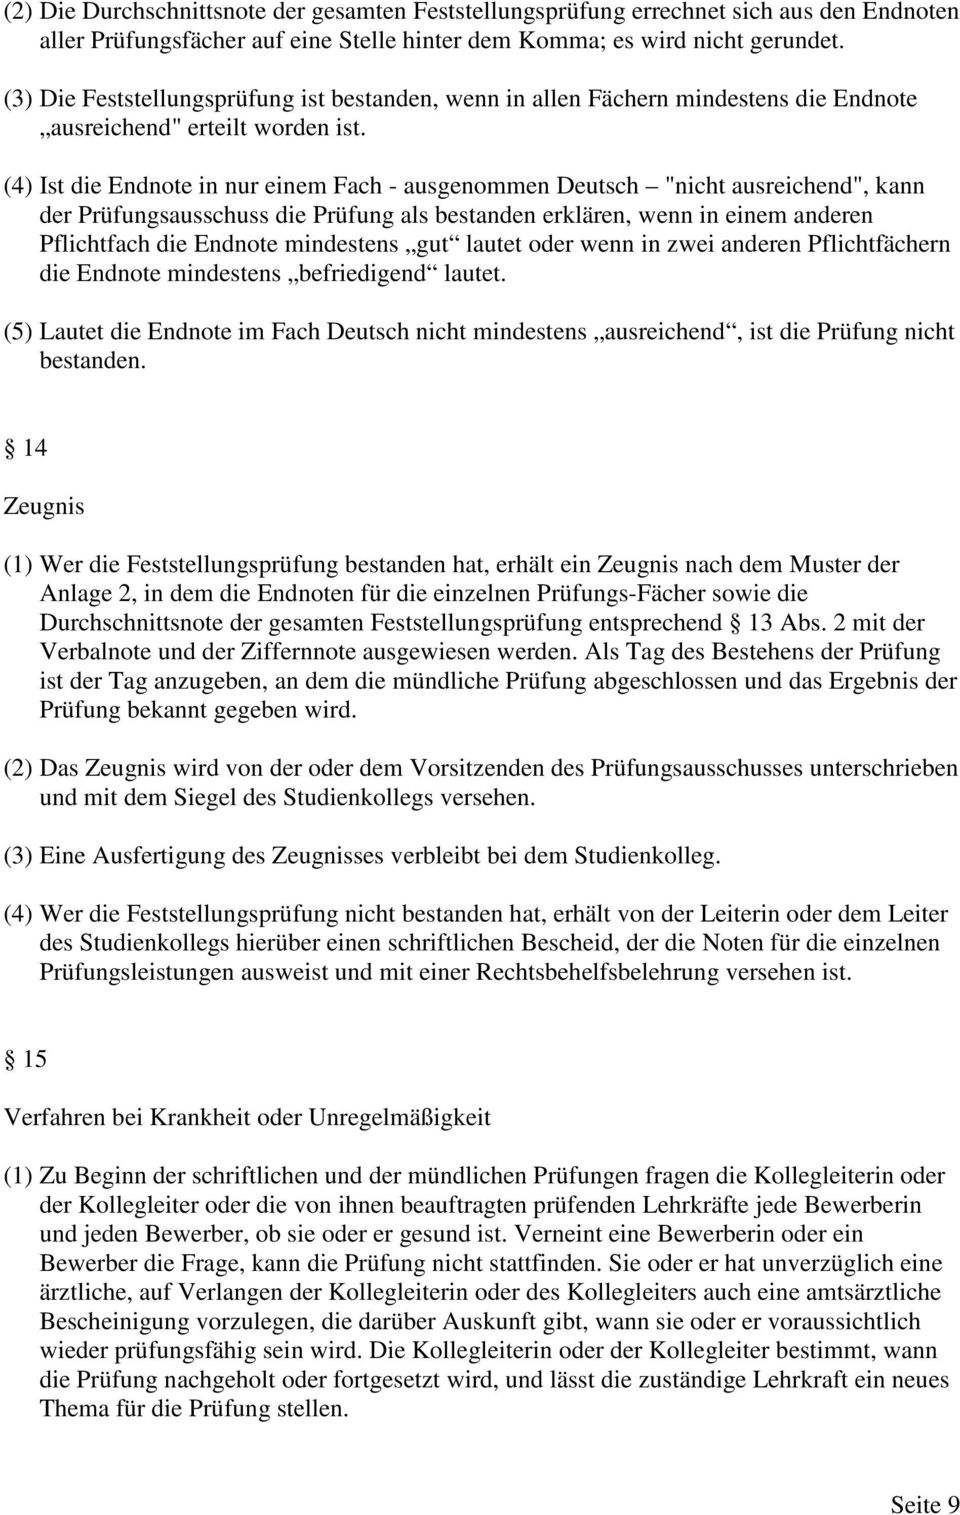 (4) Ist die Endnote in nur einem Fach - ausgenommen Deutsch "nicht ausreichend", kann der Prüfungsausschuss die Prüfung als bestanden erklären, wenn in einem anderen Pflichtfach die Endnote